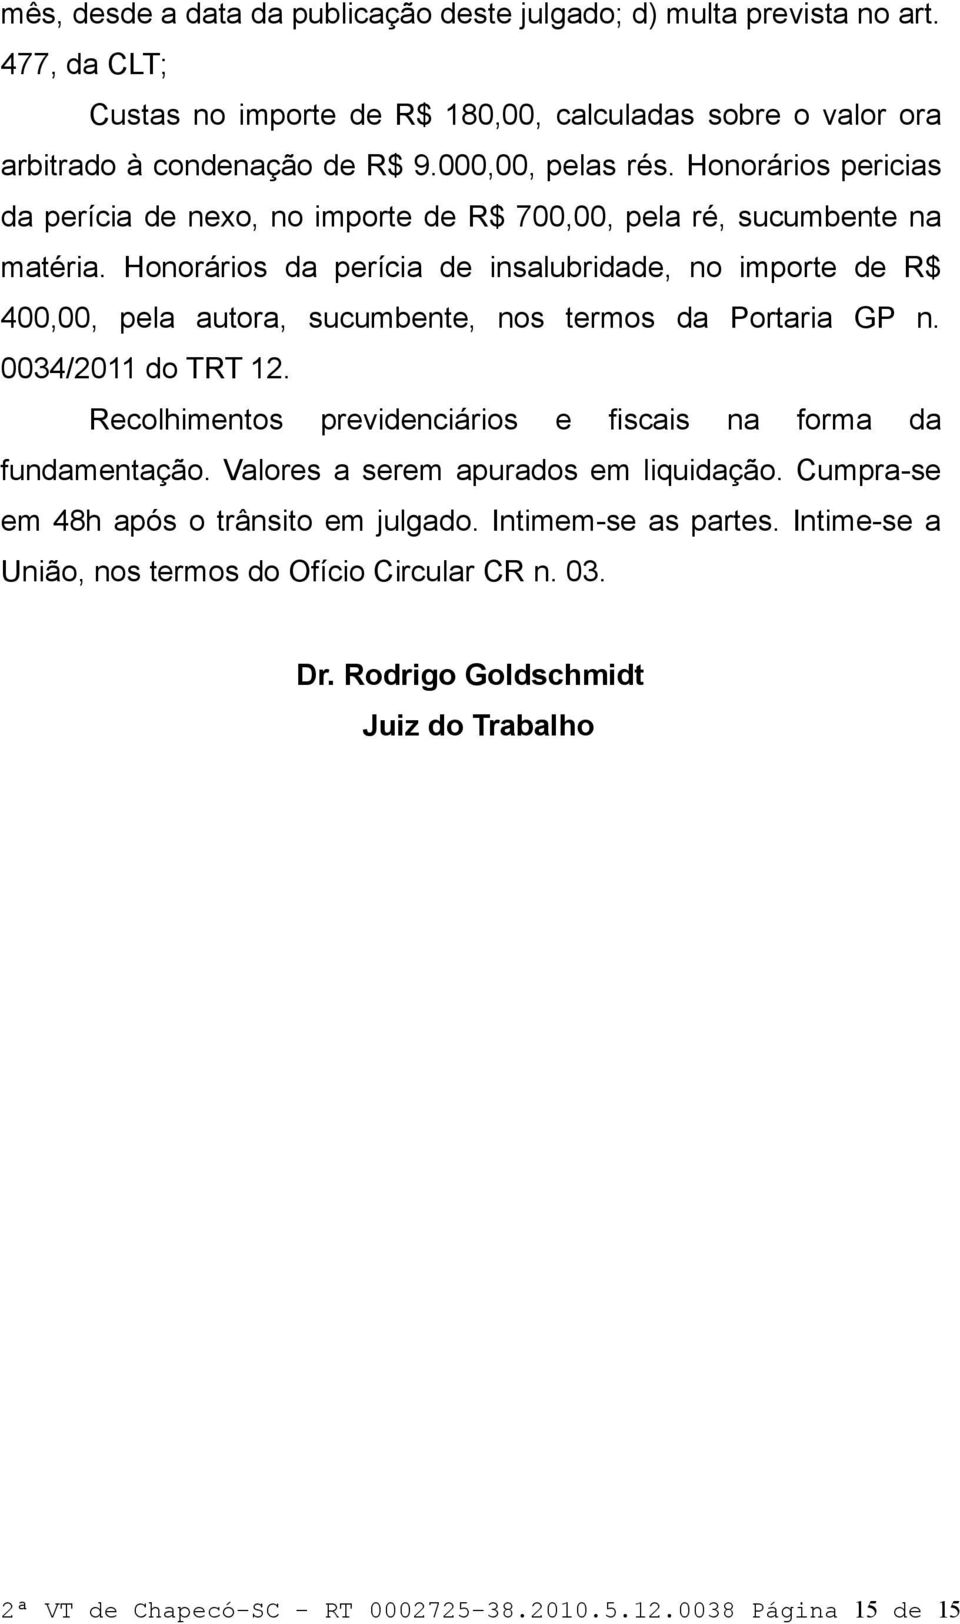 Honorários da perícia de insalubridade, no importe de R$ 400,00, pela autora, sucumbente, nos termos da Portaria GP n. 0034/2011 do TRT 12.